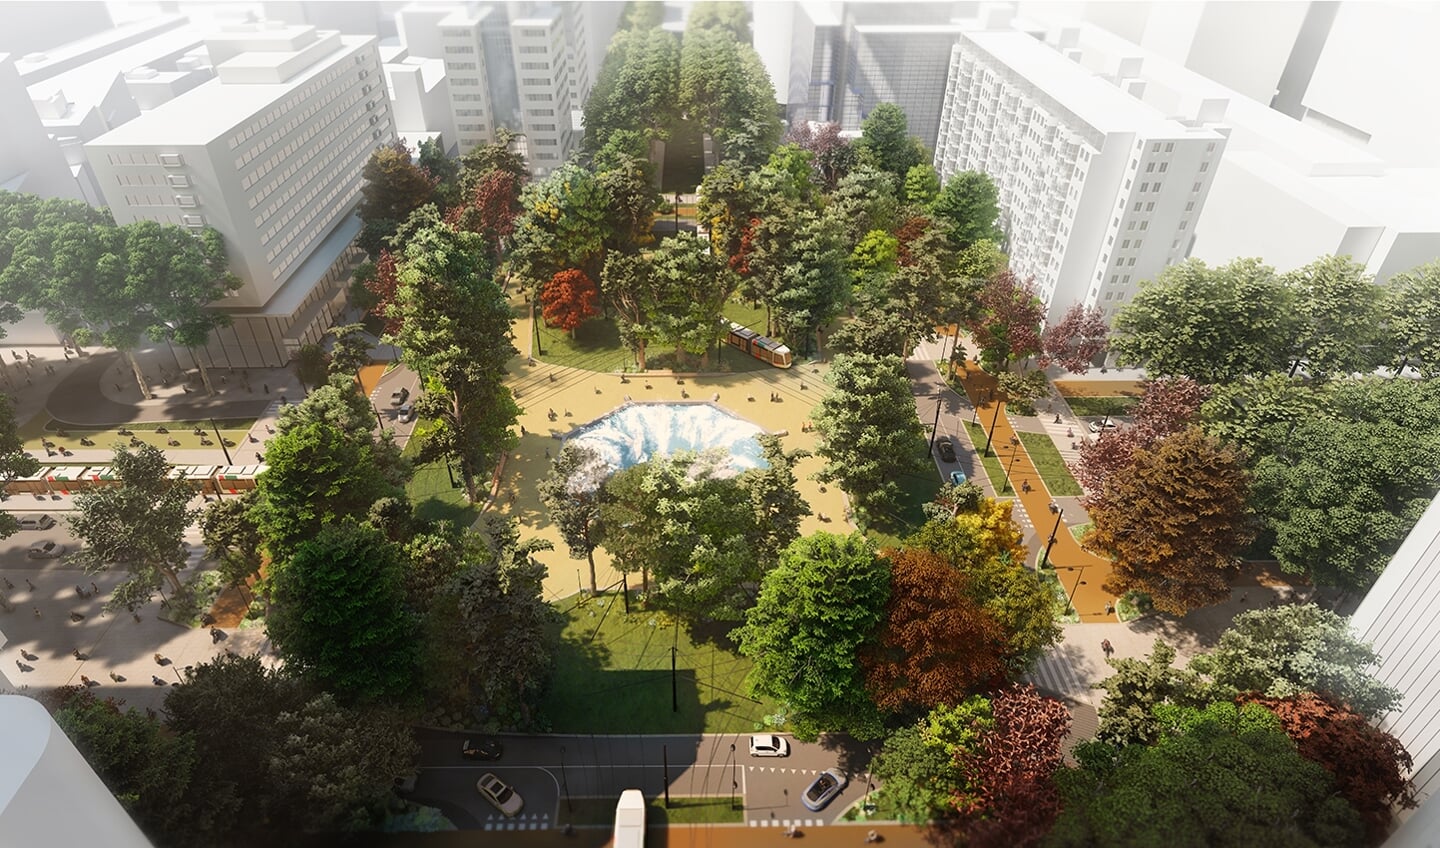  De belofte: Het Hofplein wordt een groen parkje en we mogen zitten op de rand van de fontein.